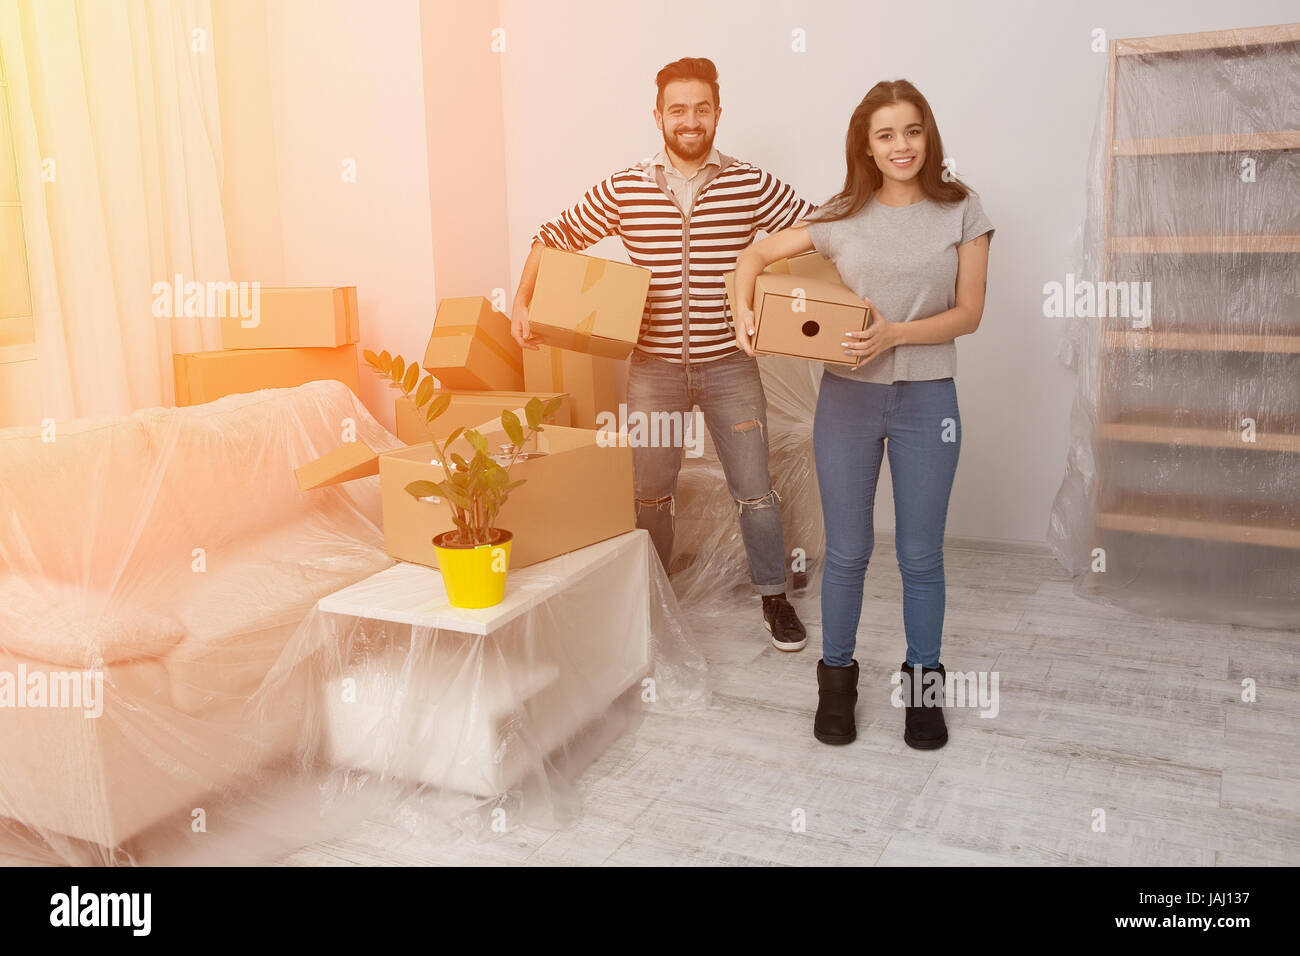 Glückliches junges Paar auspacken oder Kisten packen und der Umzug in ein neues Zuhause. Stockfoto